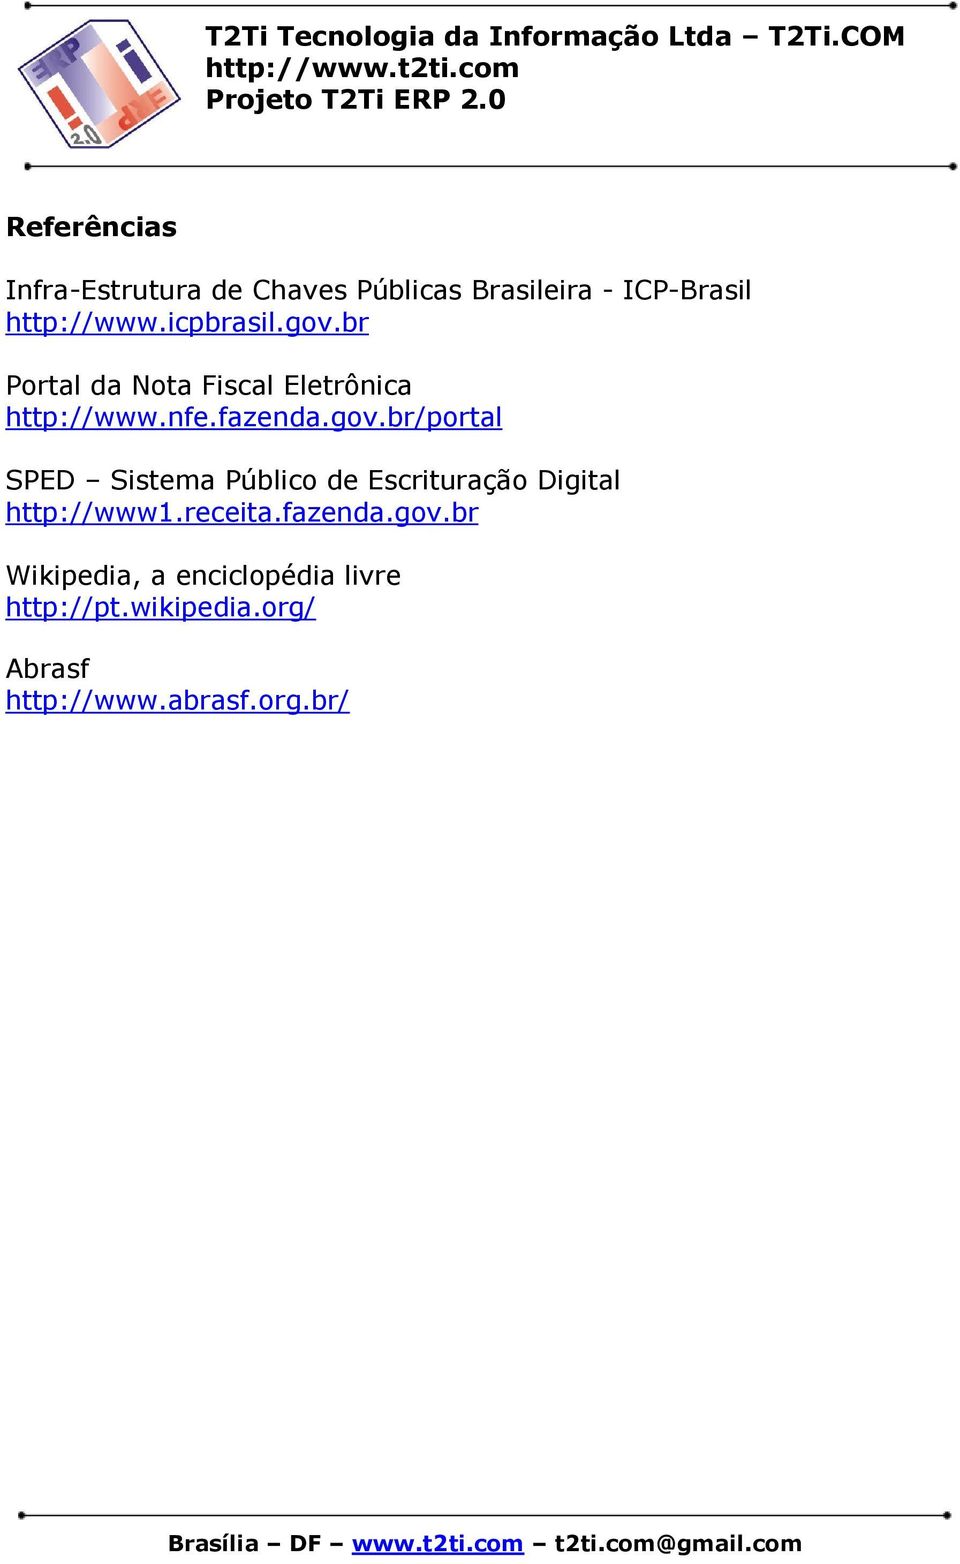 receita.fazenda.gov.br Wikipedia, a enciclopédia livre http://pt.wikipedia.